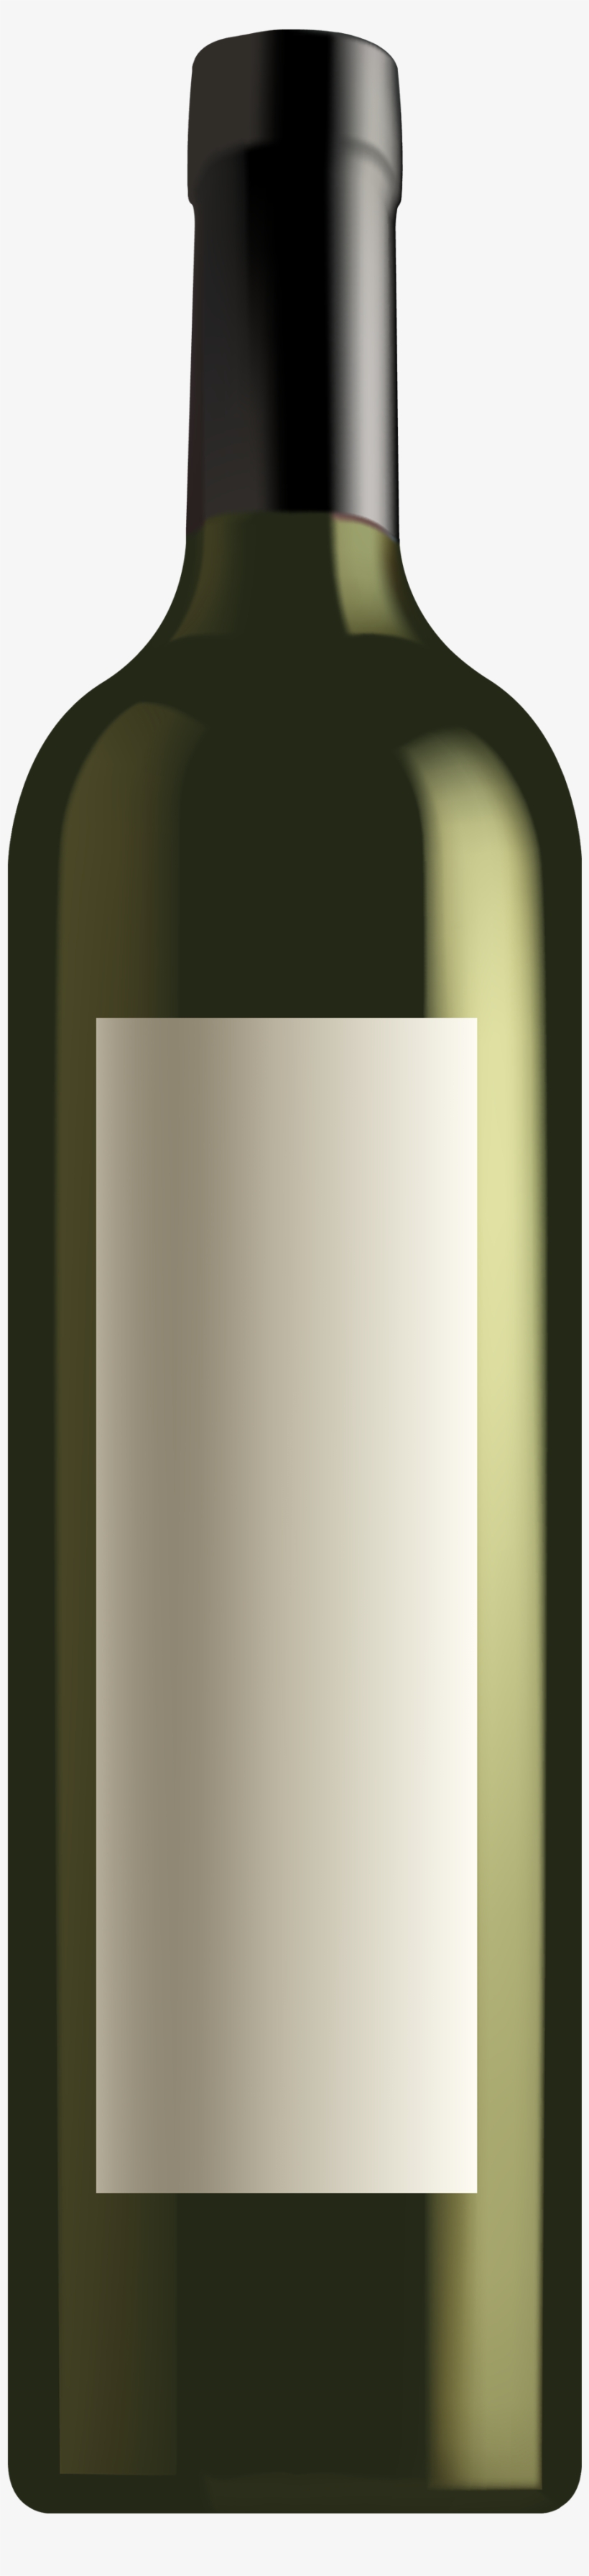 Liquor Clipart Wine Bottle Outline - Clip Art, transparent png #2195012